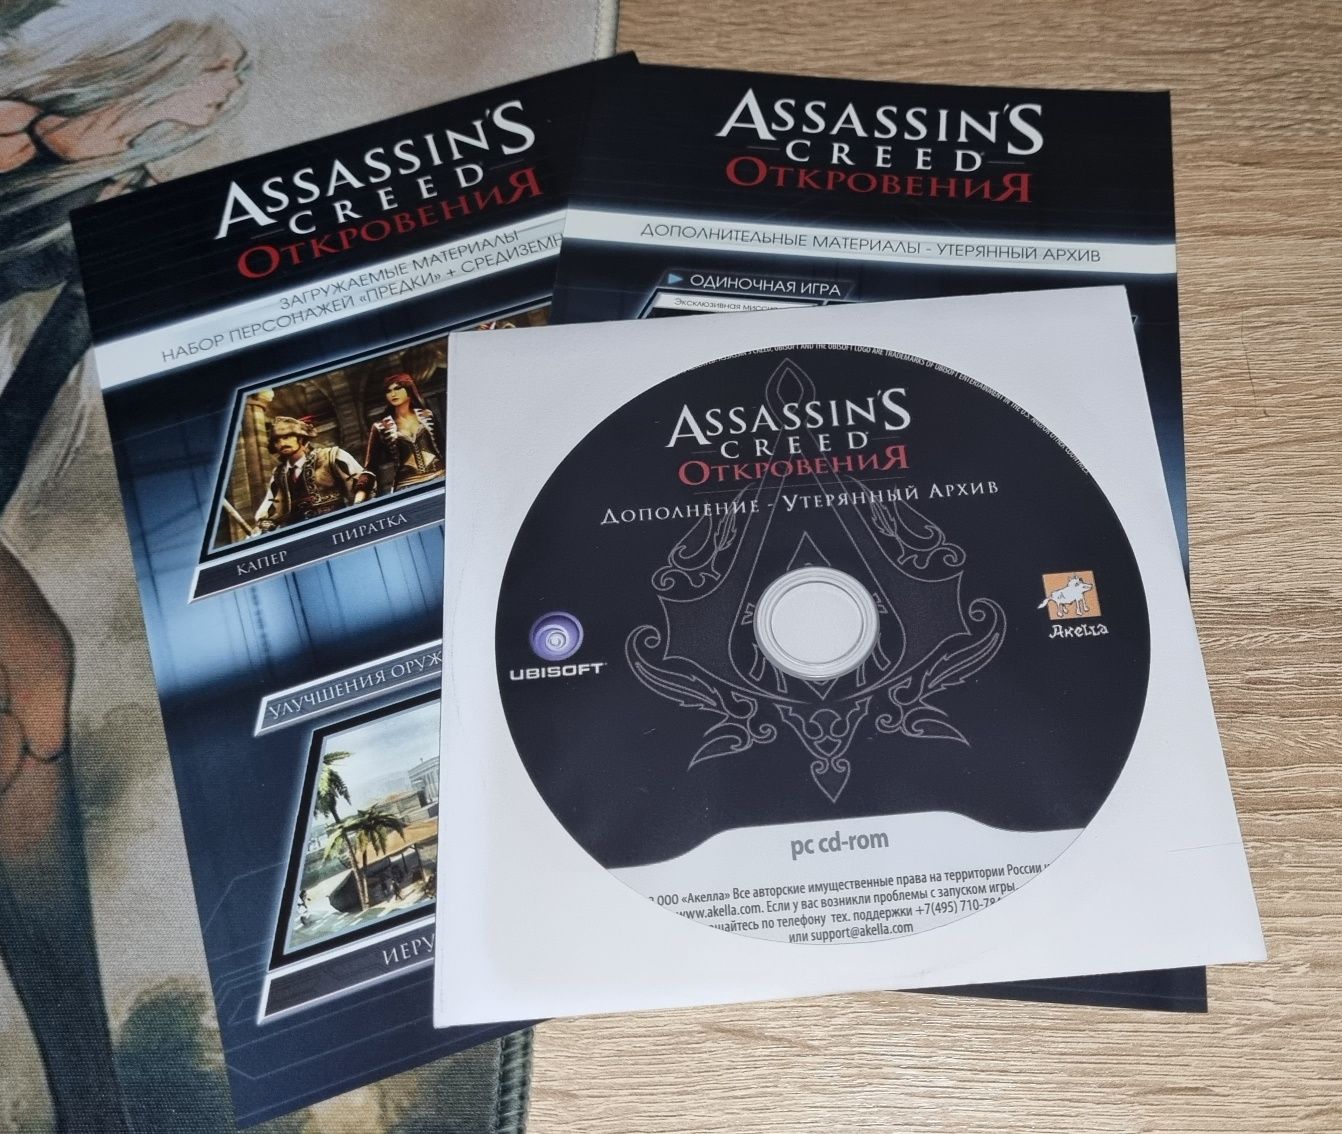 Распродается коллекция по серии Assassins creed